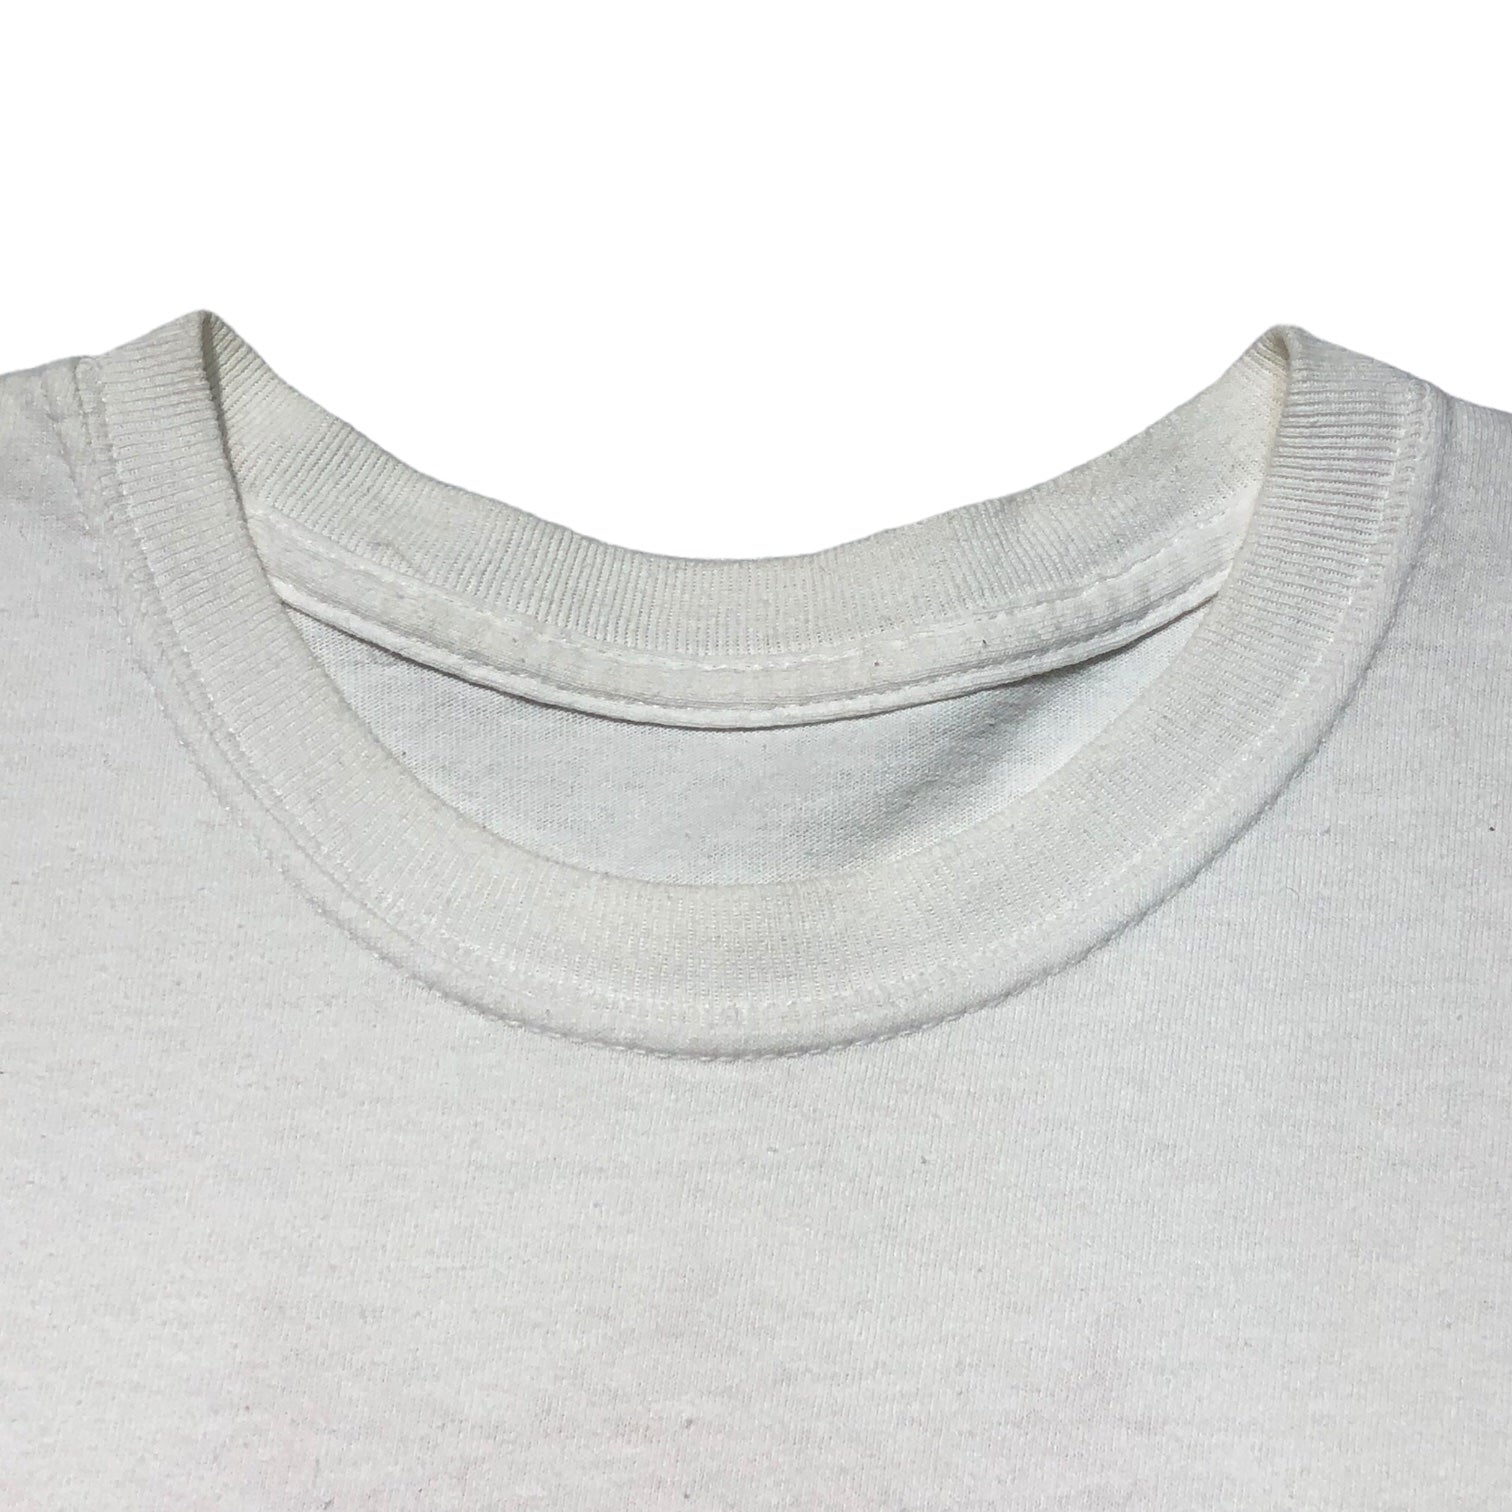 FRAGMENT DESIGN(フラグメントデザイン) 18SS×THE CONVENI FRGMTS TEE ザコンビニ フラグメント Tシャツ PUM-28110-C M ホワイト×レッド